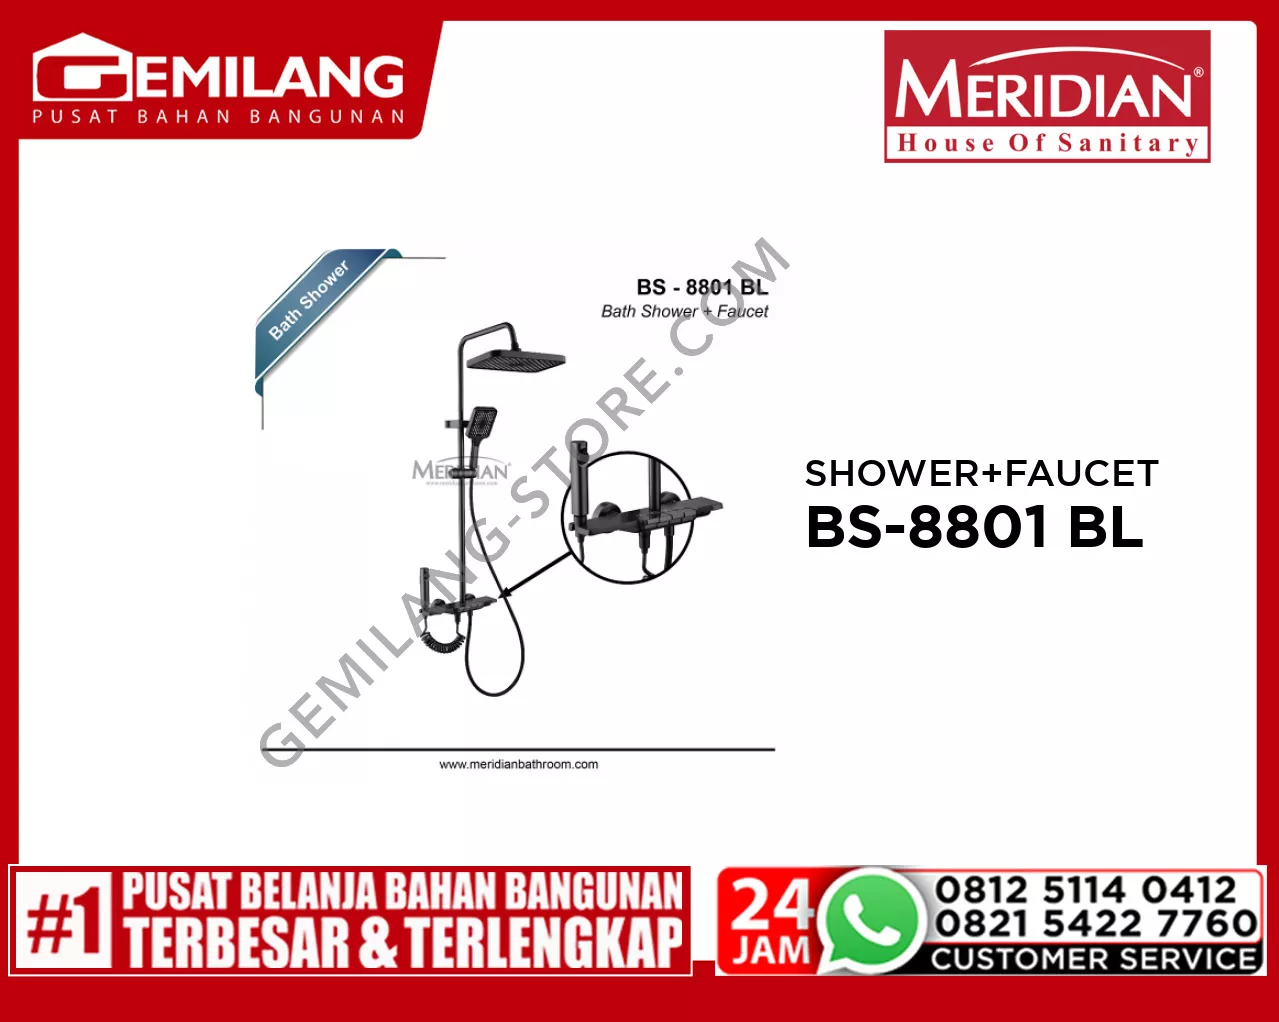 MERIDIAN BATH SHOWER + FAUCET BLACK BS-8801 BL